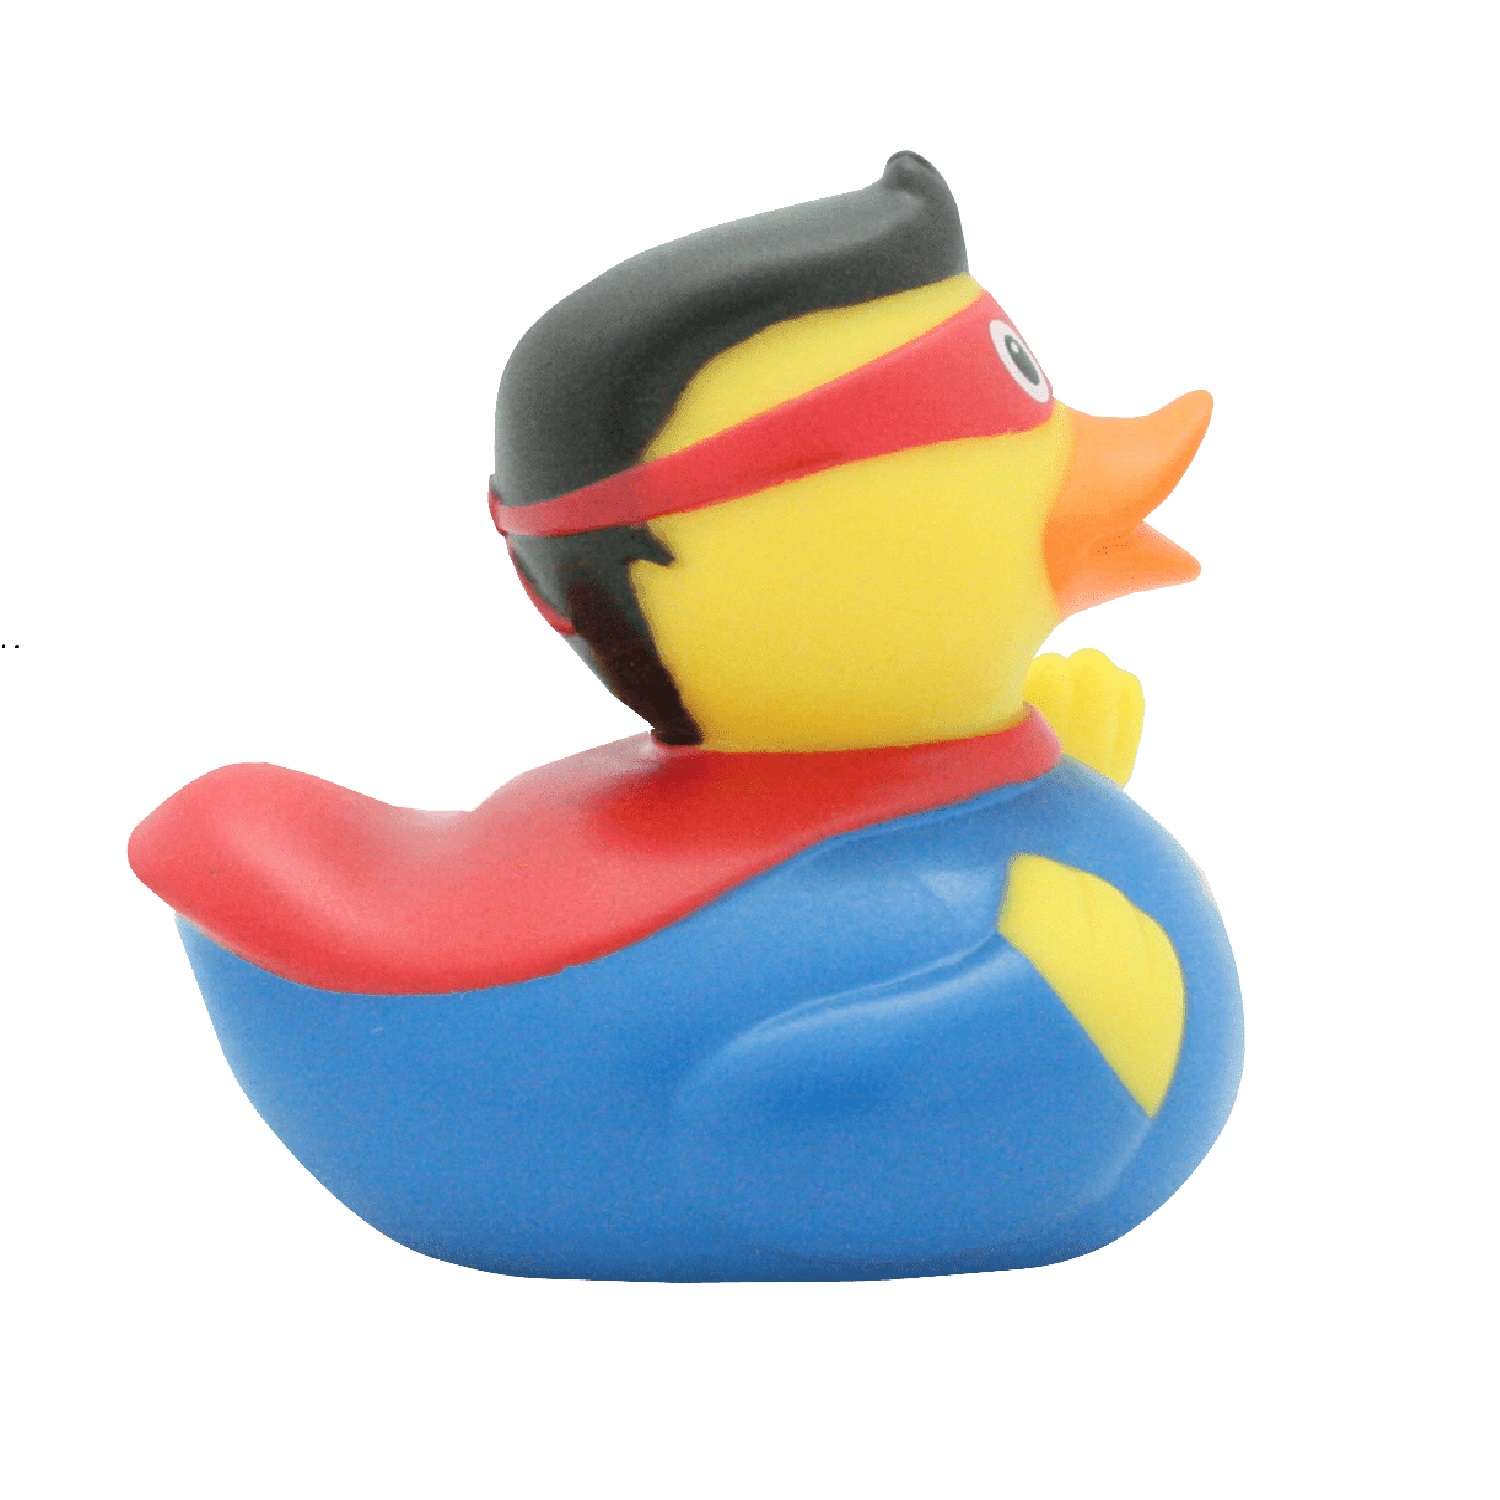 Игрушка Funny ducks для ванной Супер он уточка 1809 - фото 1